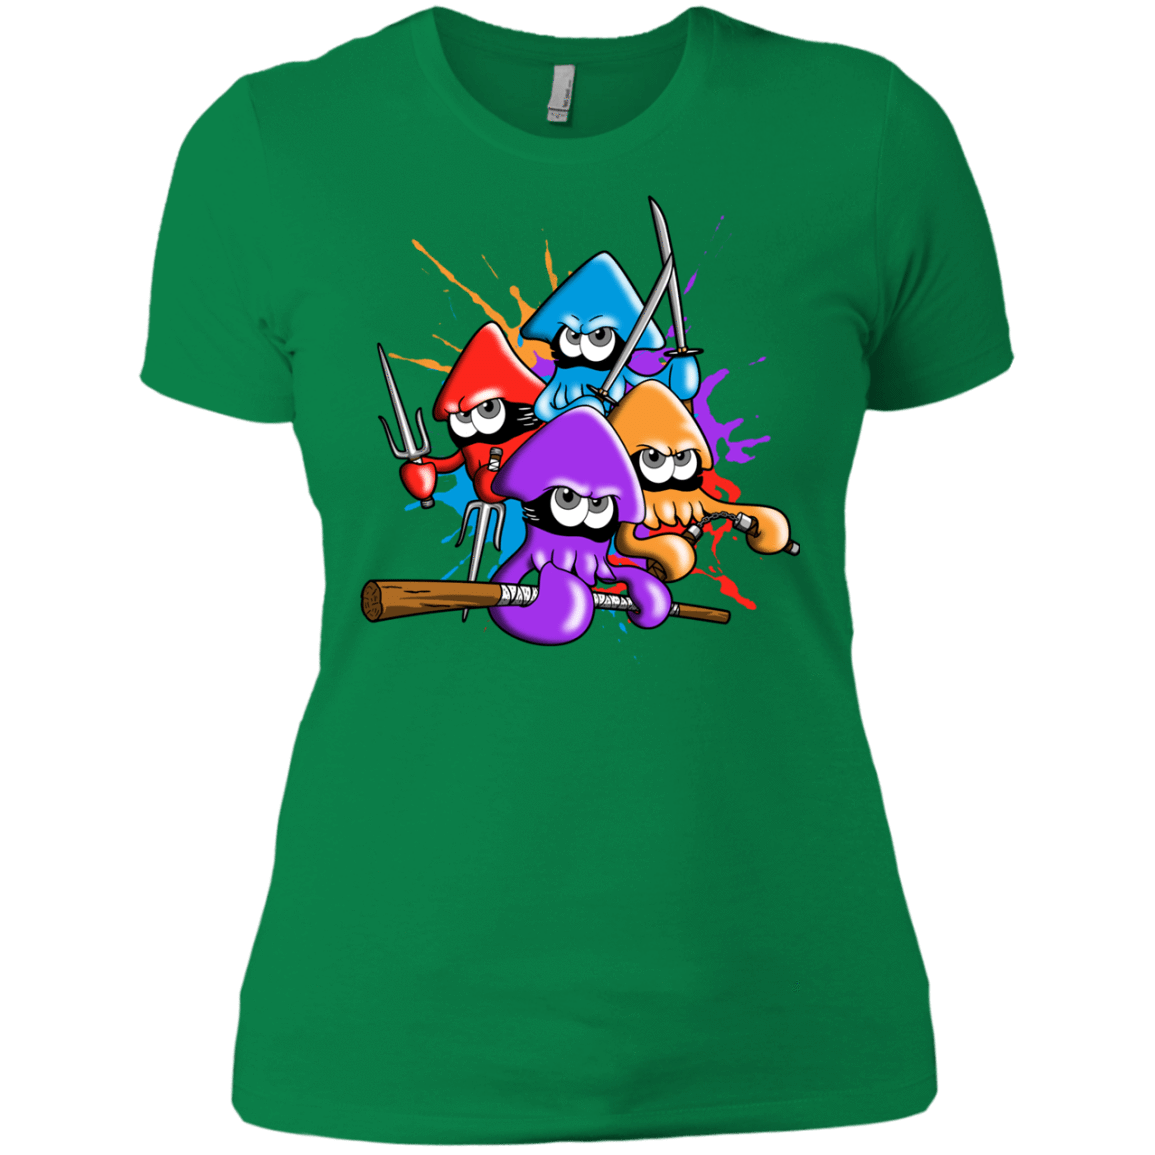 T-Shirts Kelly Green / X-Small Teenage Mutant Ninja Squids Women's Premium T-Shirt